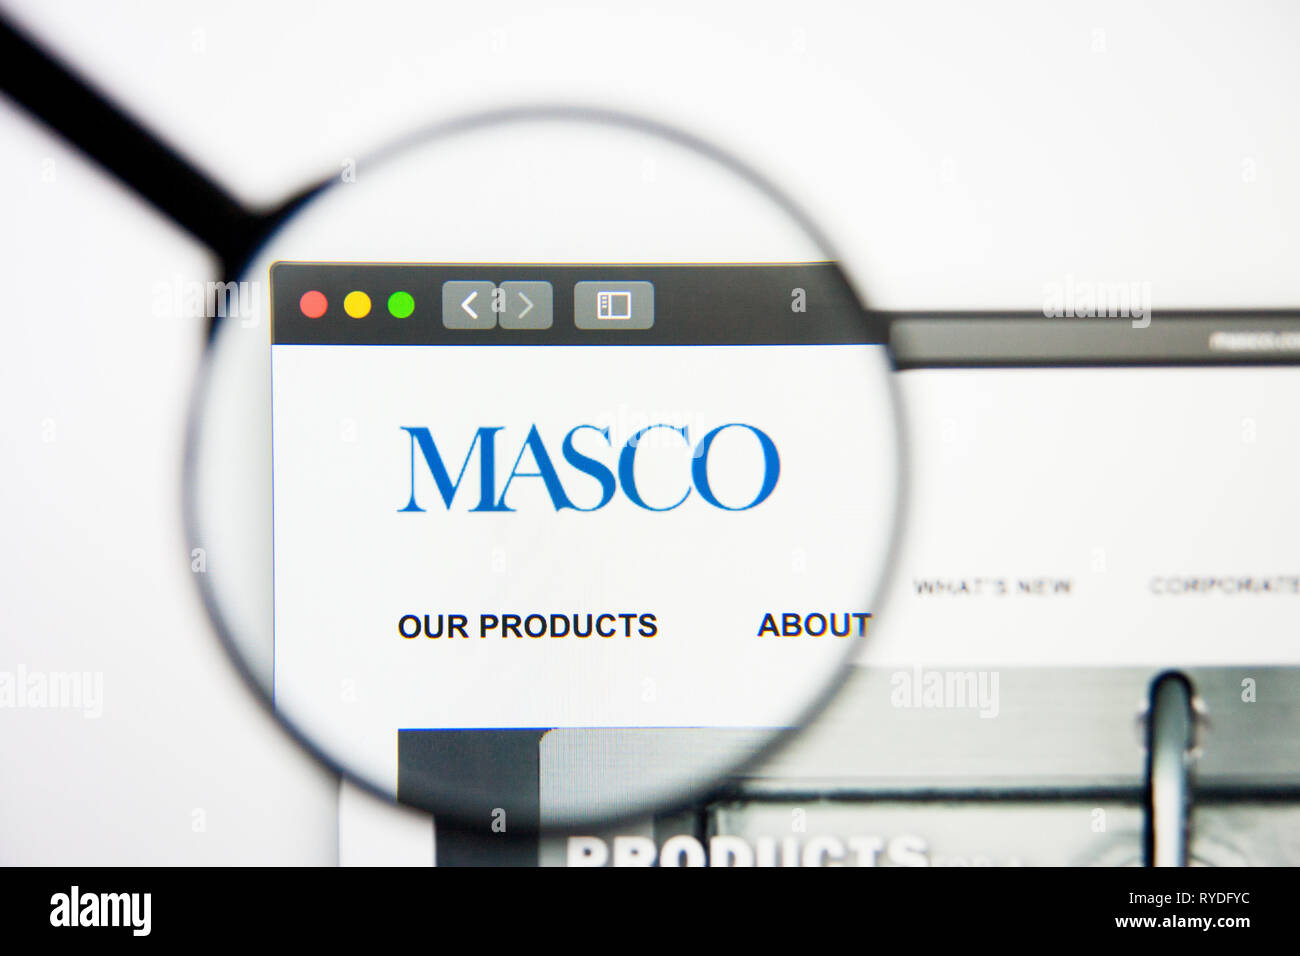 Los Angeles, Californie, USA - 5 mars 2019 : Masco accueil du site. Logo Masco visible sur l'écran d'affichage, de rédaction d'illustration Banque D'Images